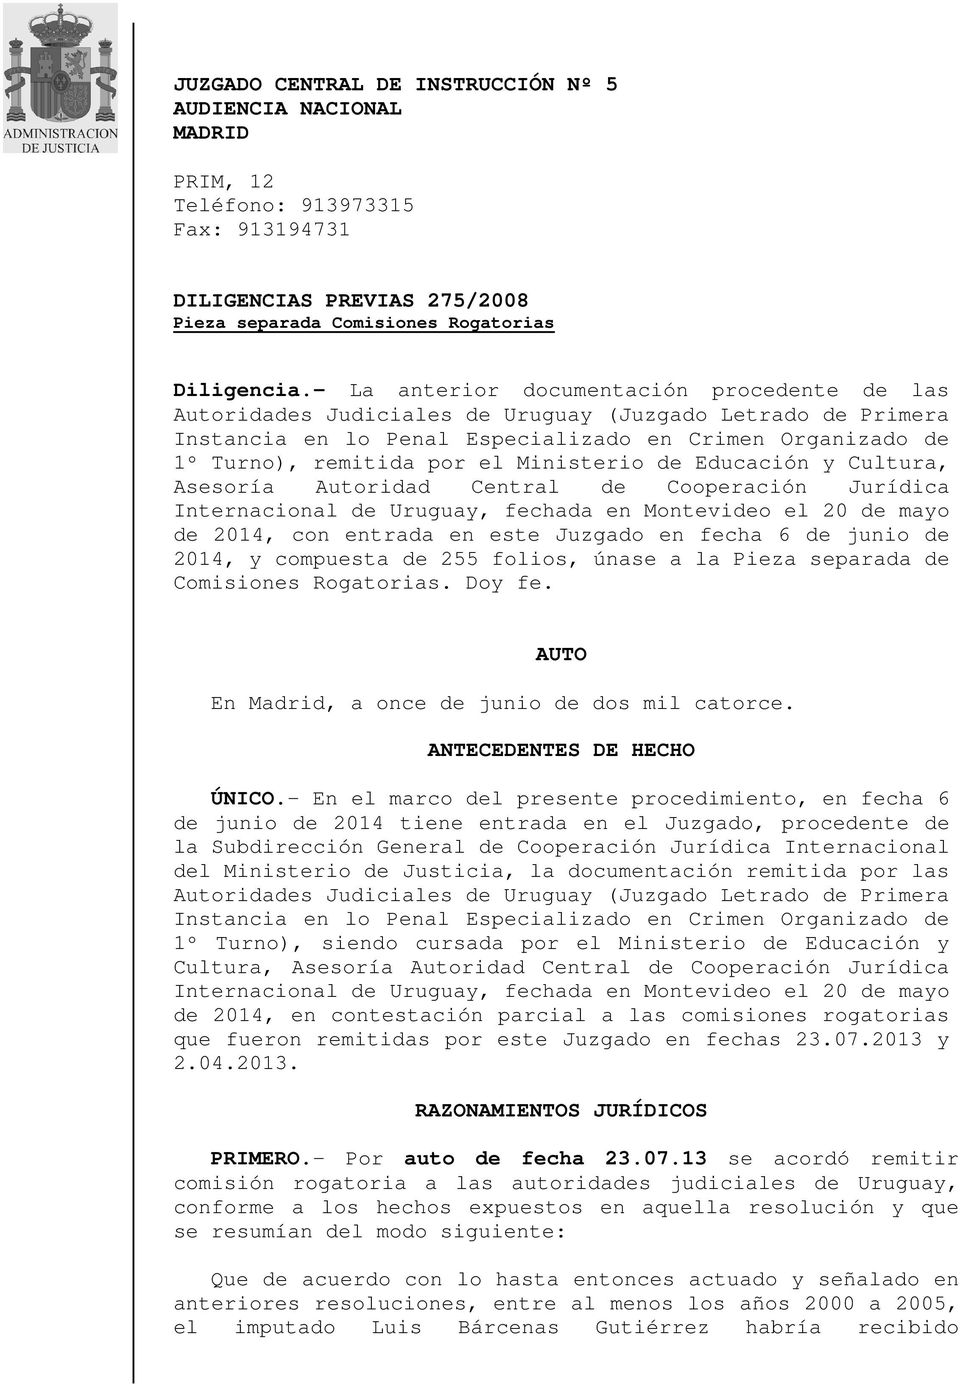 Ministerio de Educación y Cultura, Asesoría Autoridad Central de Cooperación Jurídica Internacional de Uruguay, fechada en Montevideo el 20 de mayo de 2014, con entrada en este Juzgado en fecha 6 de